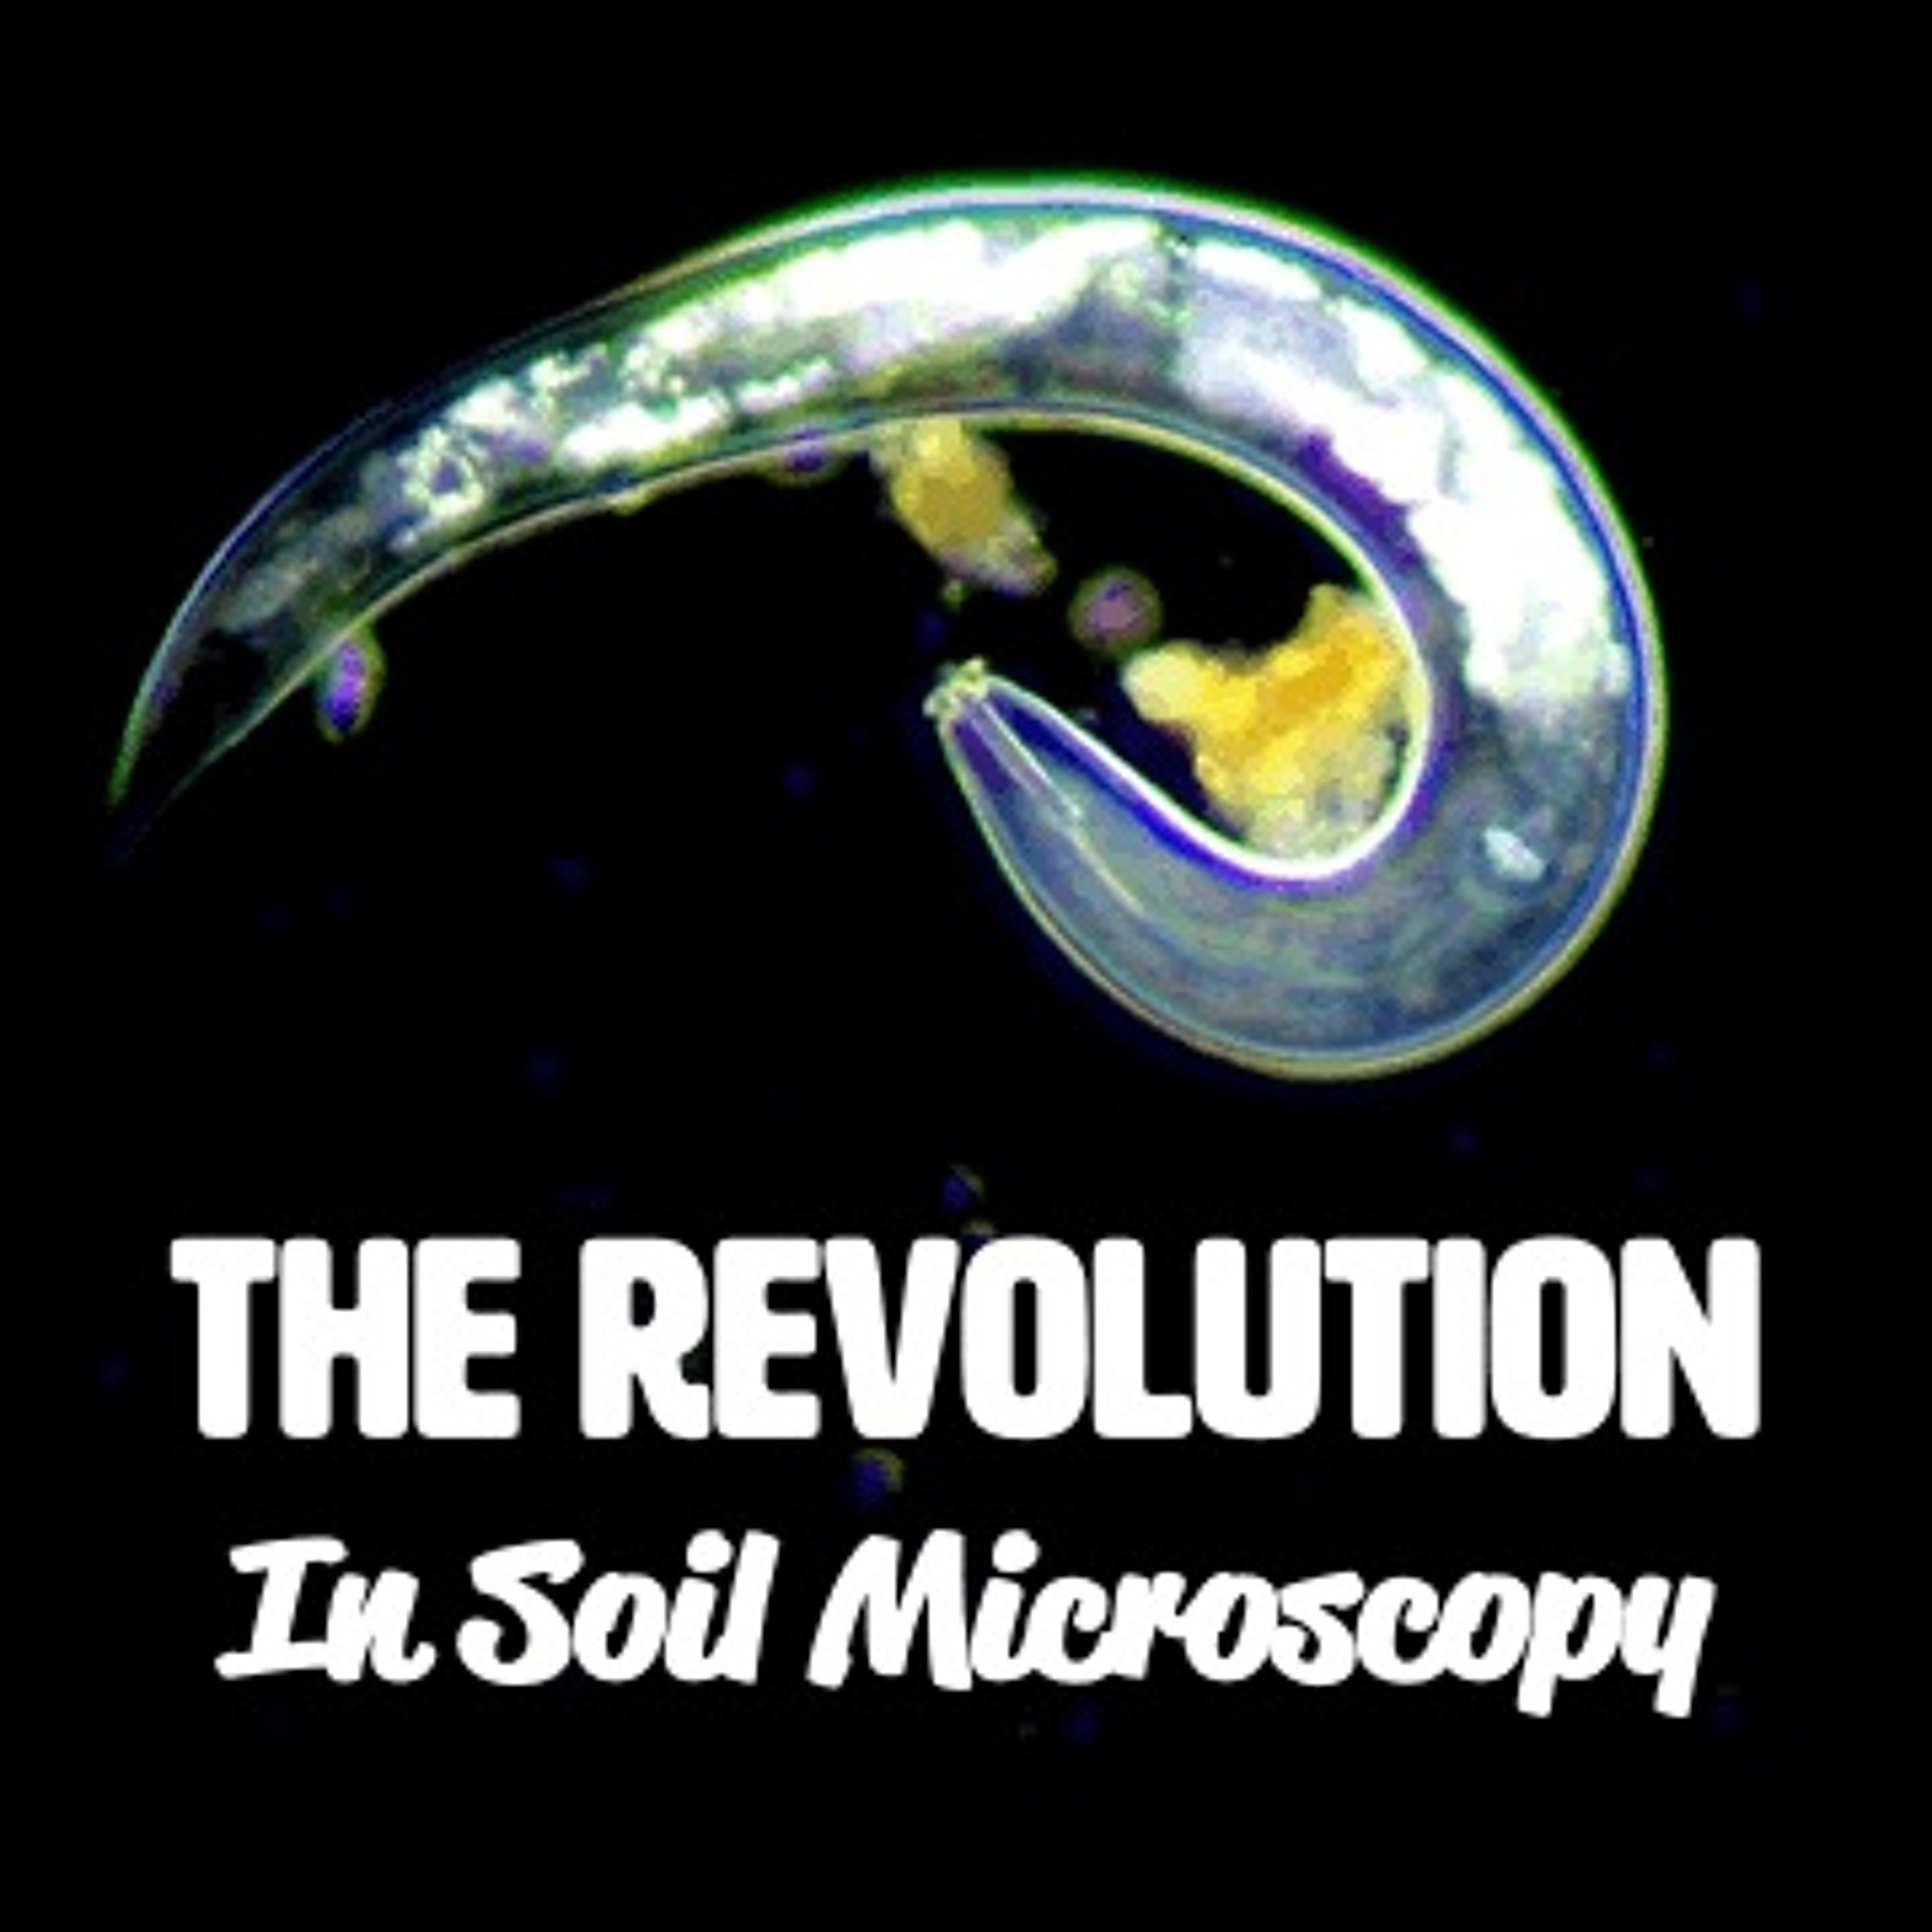 Ep. 186 | The Revolution In Soil Microscopy [FULL WEBINAR]